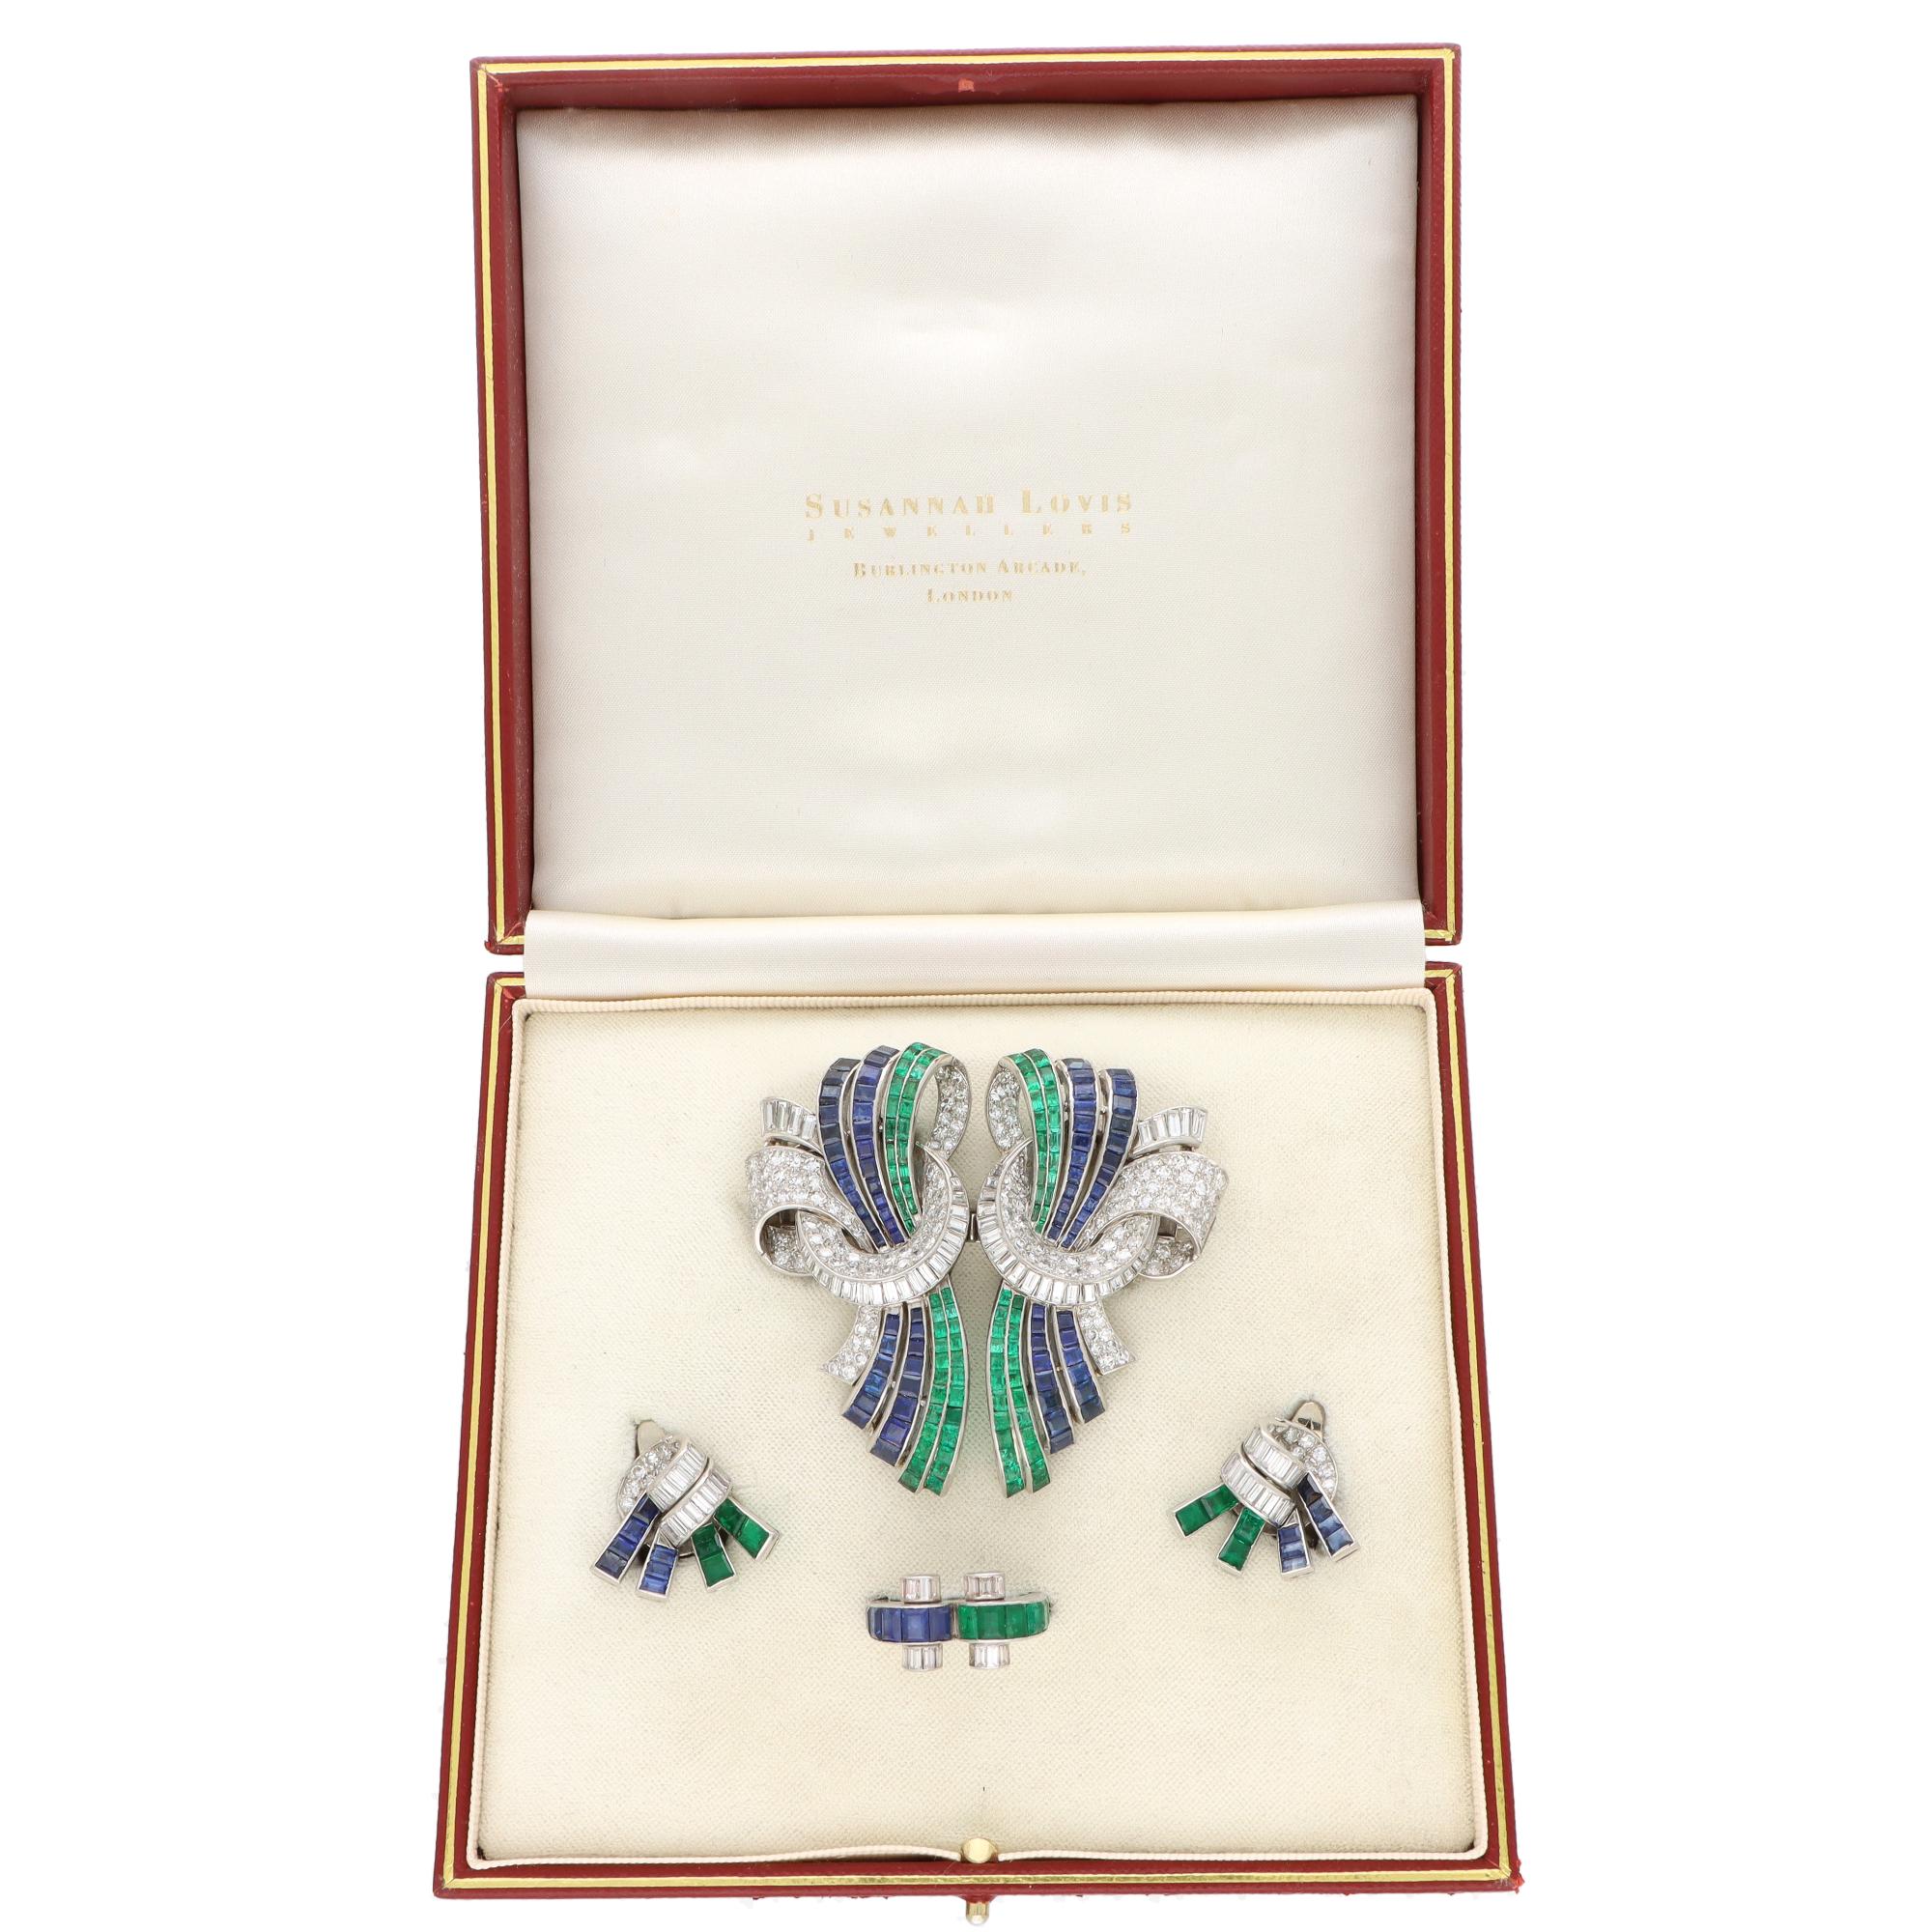 Eine seltene Vintage Art Deco Drayson Smaragd, Saphir und Diamant Brosche, Ohrring und Ring Suite in Platin gesetzt.

Diese optisch atemberaubende Serie besteht aus einem Ring, Ohrringen und einer wandelbaren Clip-Brosche, die sich alle perfekt